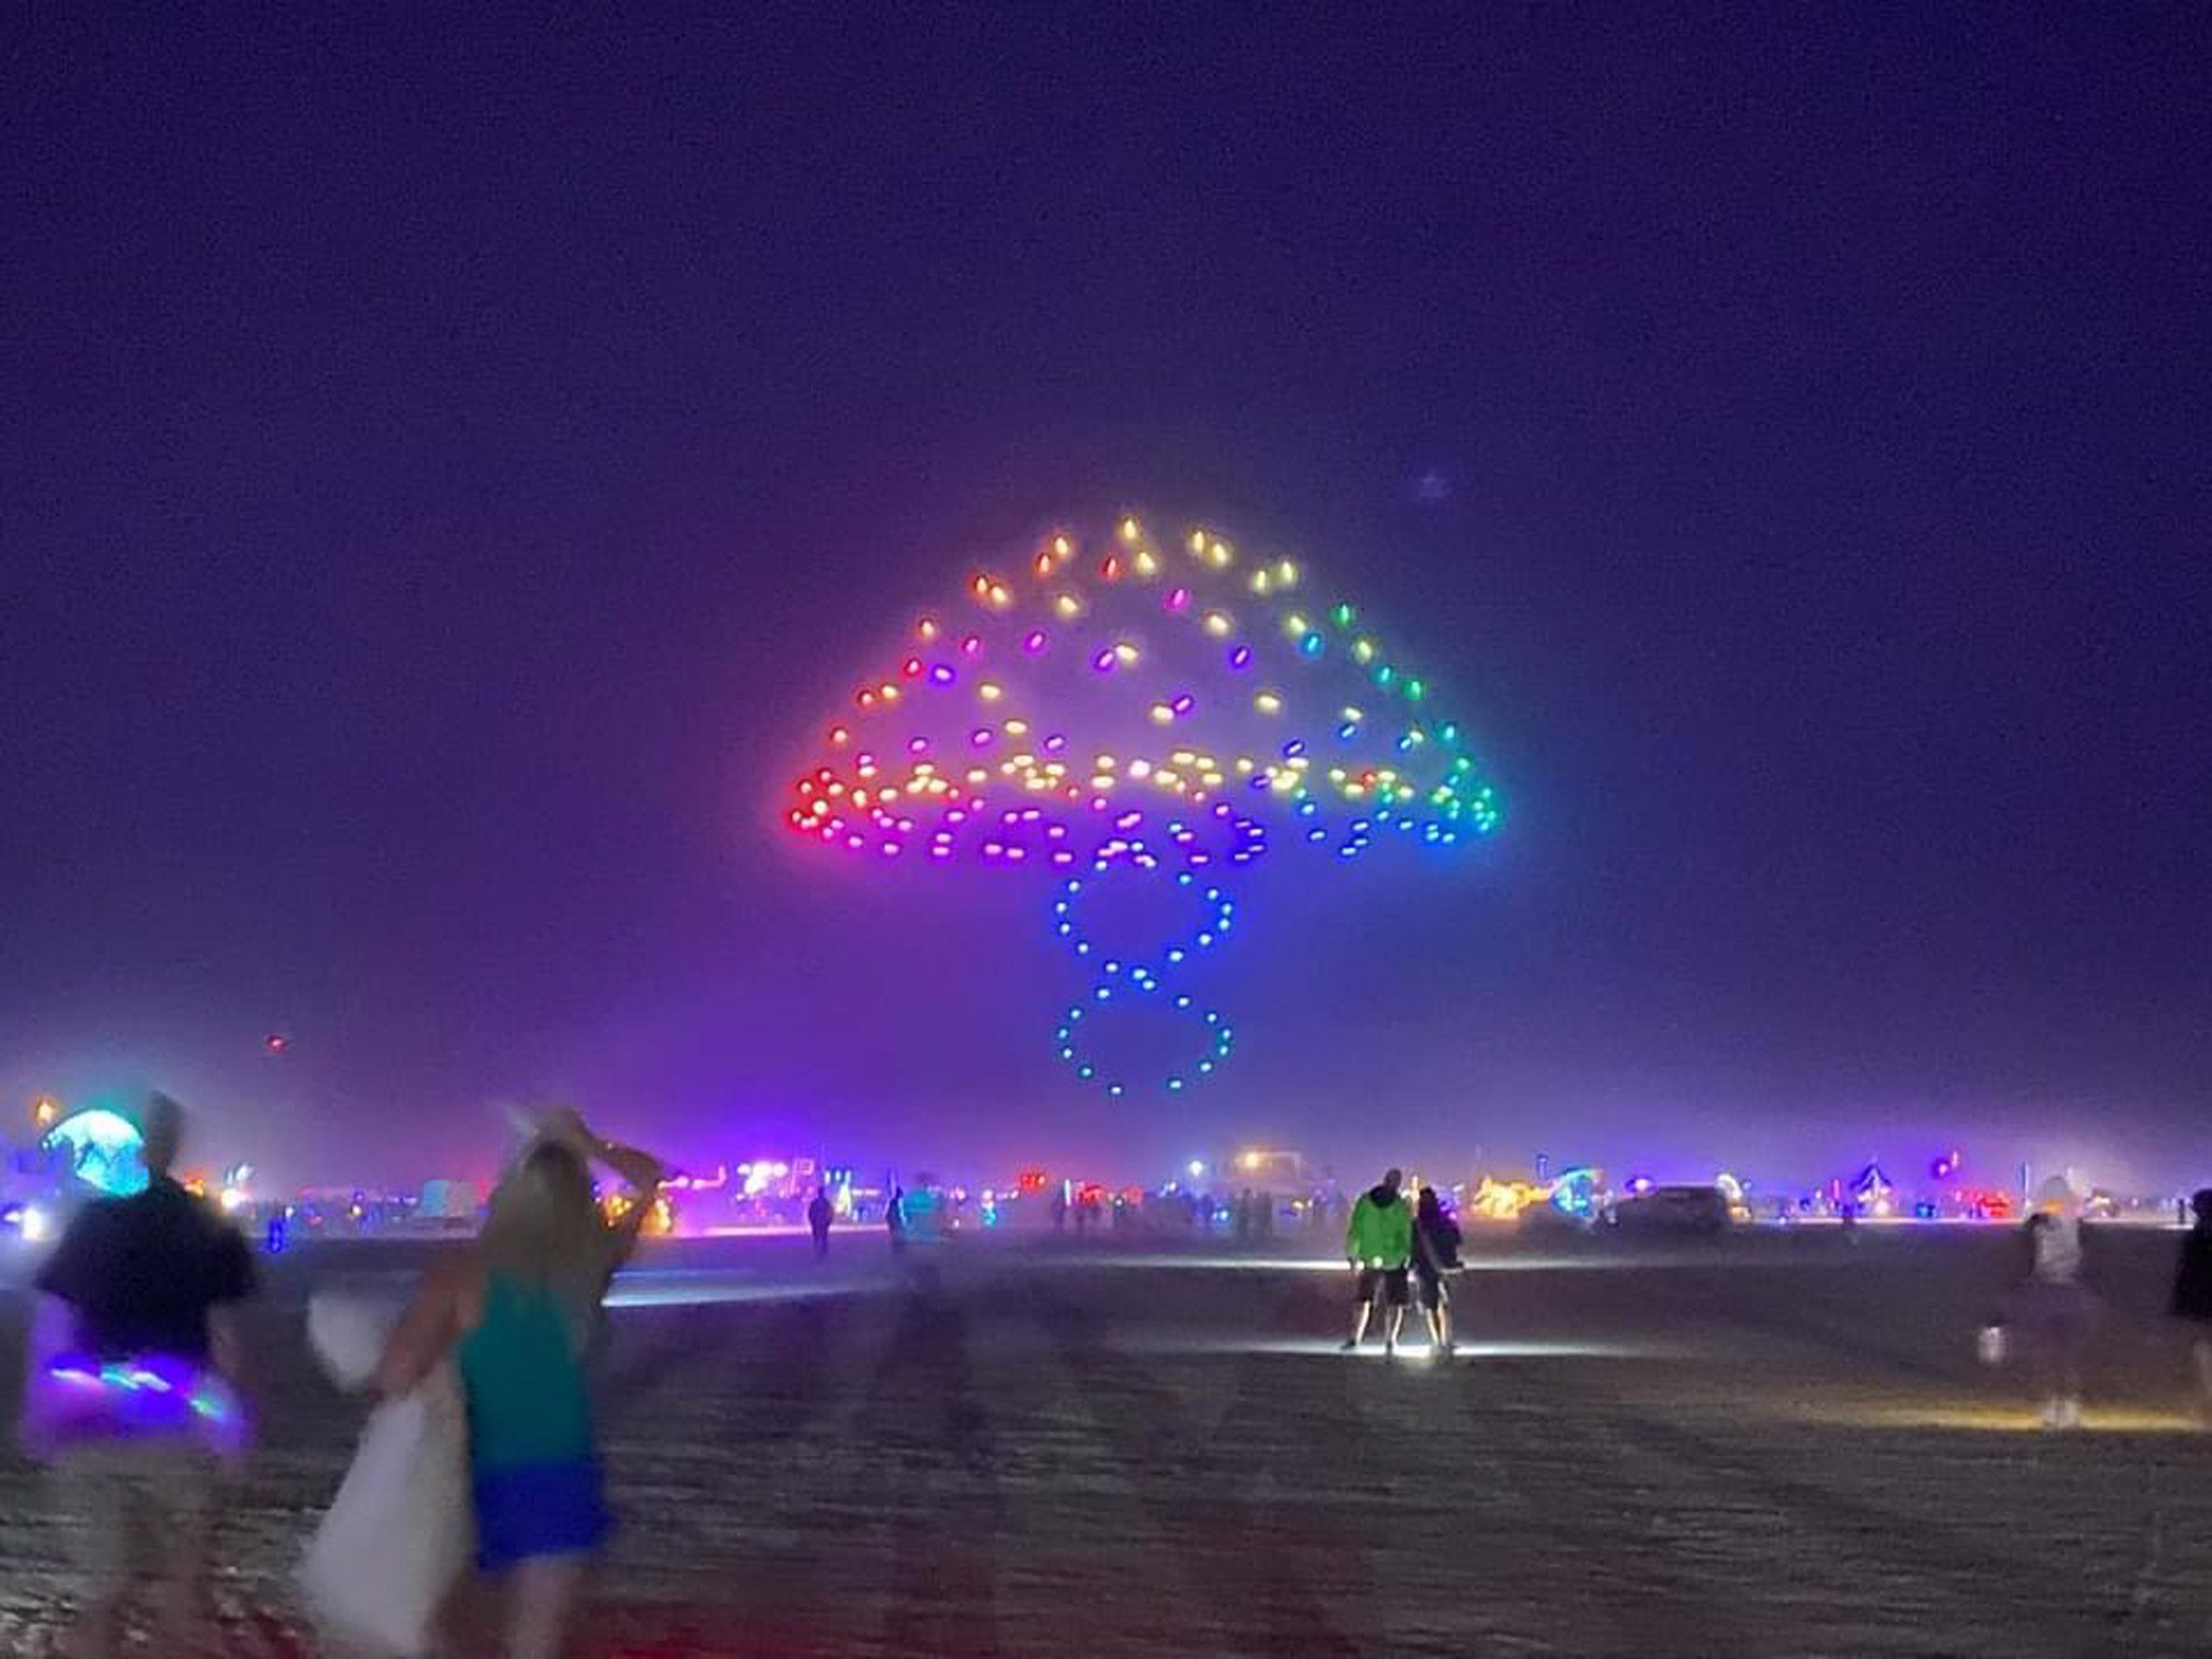 A mushroom shaped light installation at Burning Man